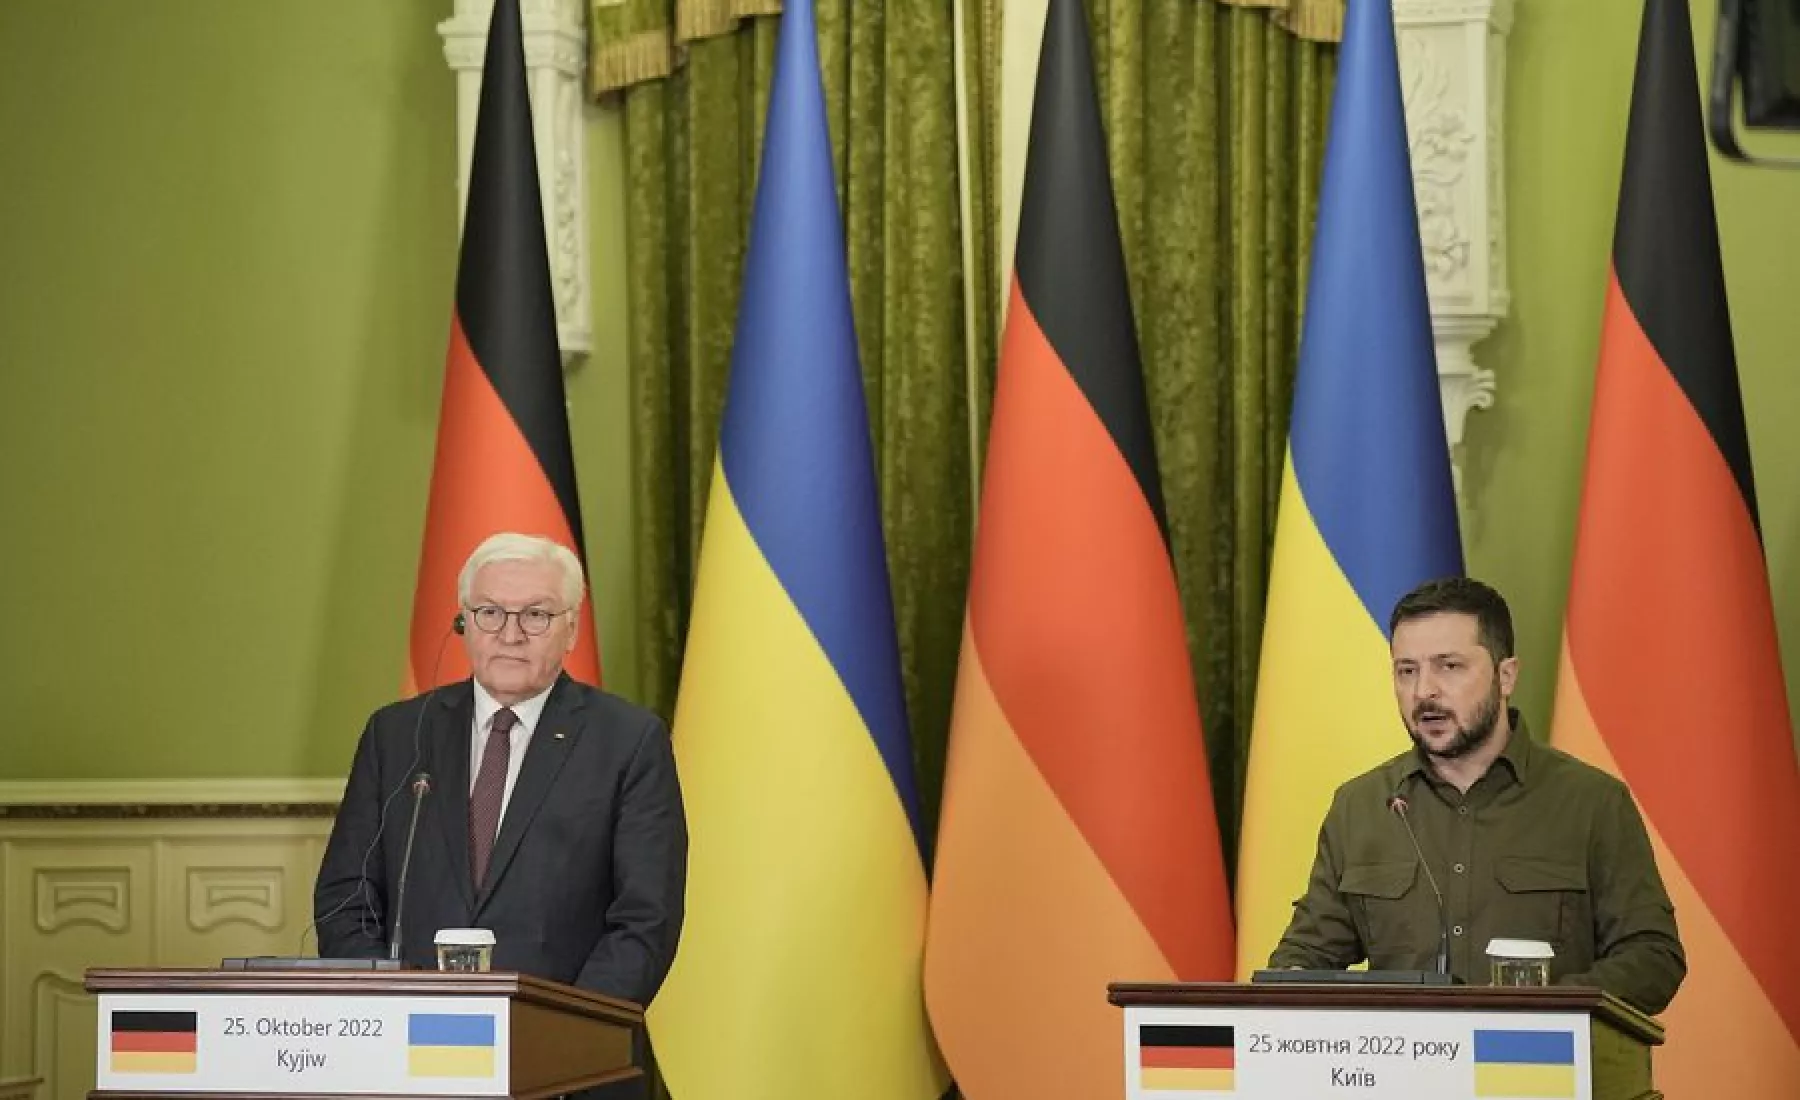 Bundespräsident Frank-Walter Steinmeier (l) gibt zusammen mit dem ukrainischen Präsidenten Wolodymyr Selenskyj eine gemeinsame Pressekonferenz